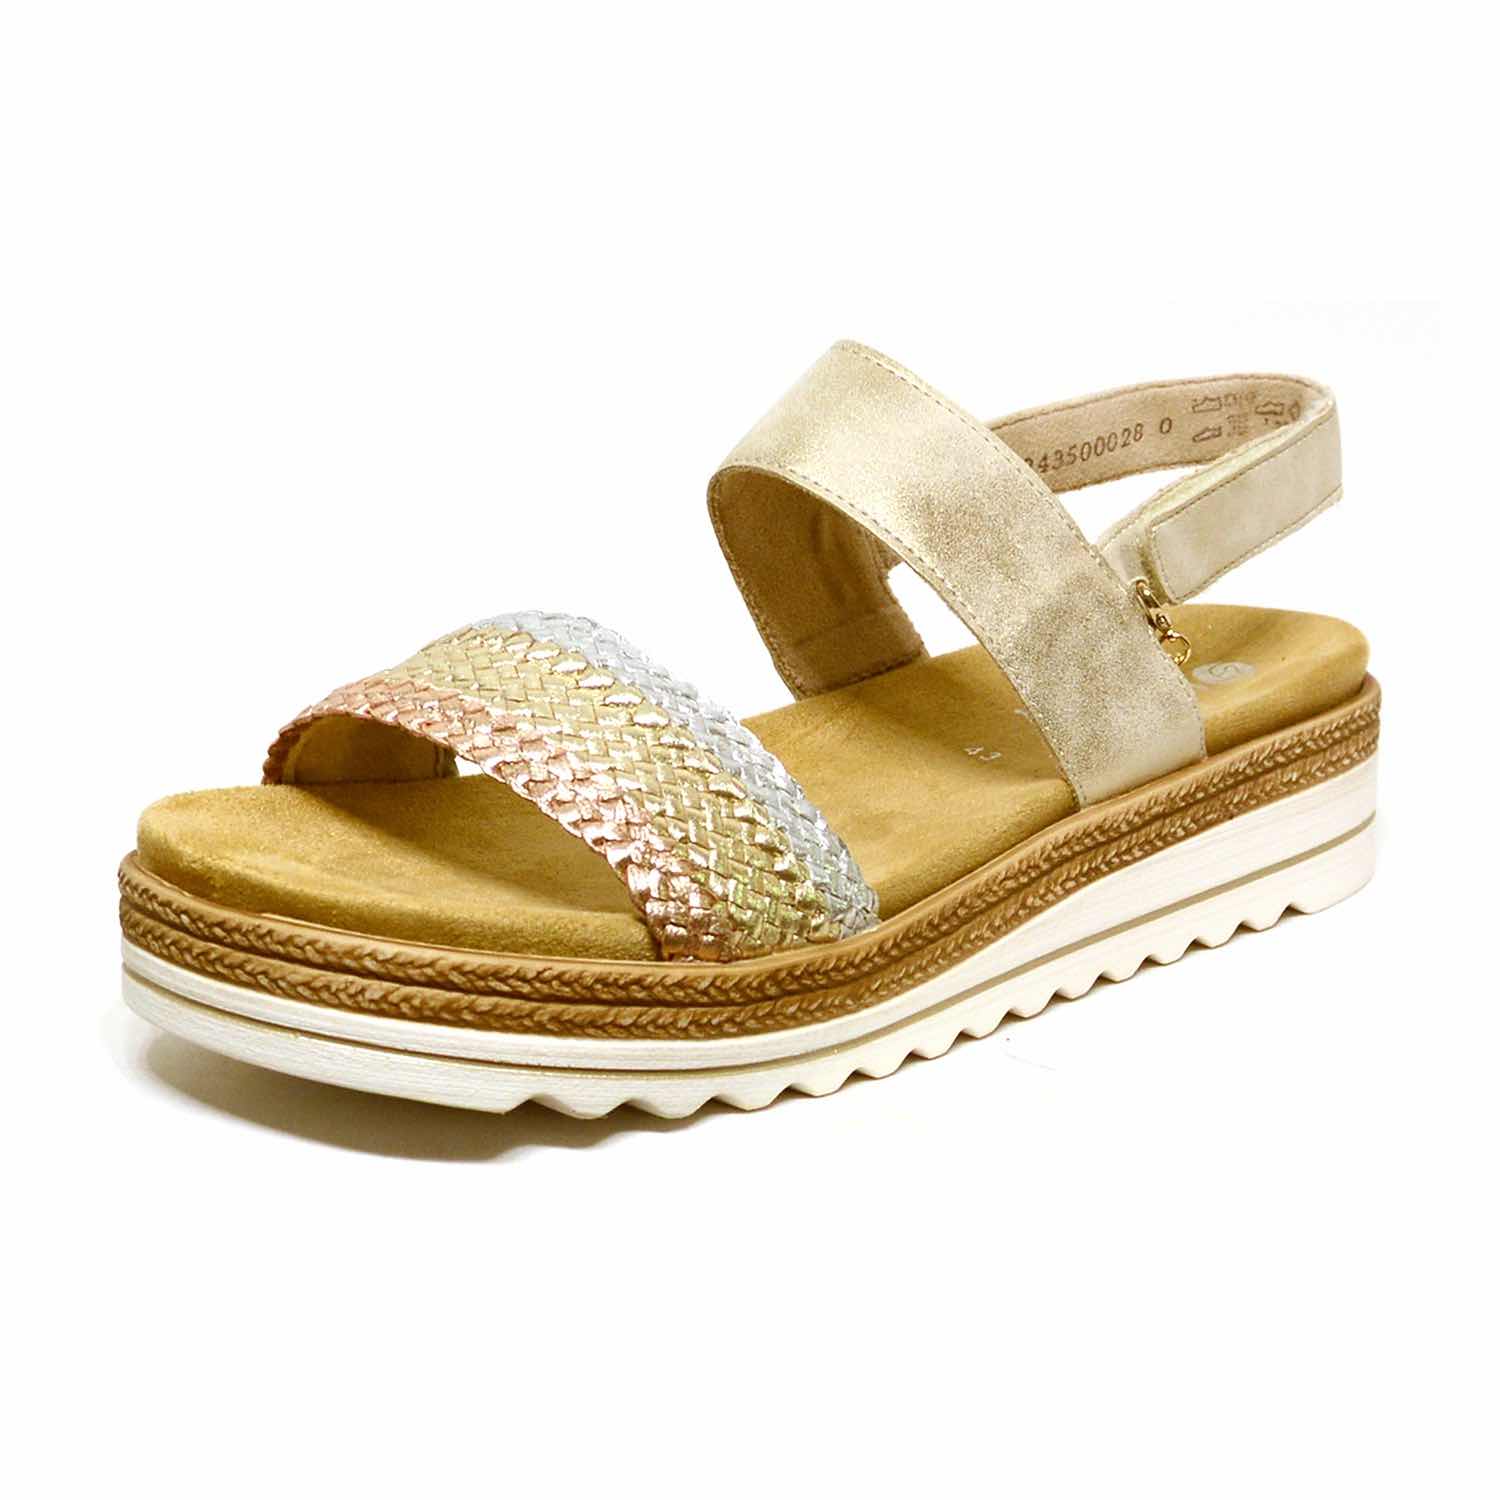 sandalettes femme grande taille du 40 au 48, cuir lisse metallise multicolore or, talon de 3 à 4 cm, mode sandales plates souples confort detente, chaussures pour l'été